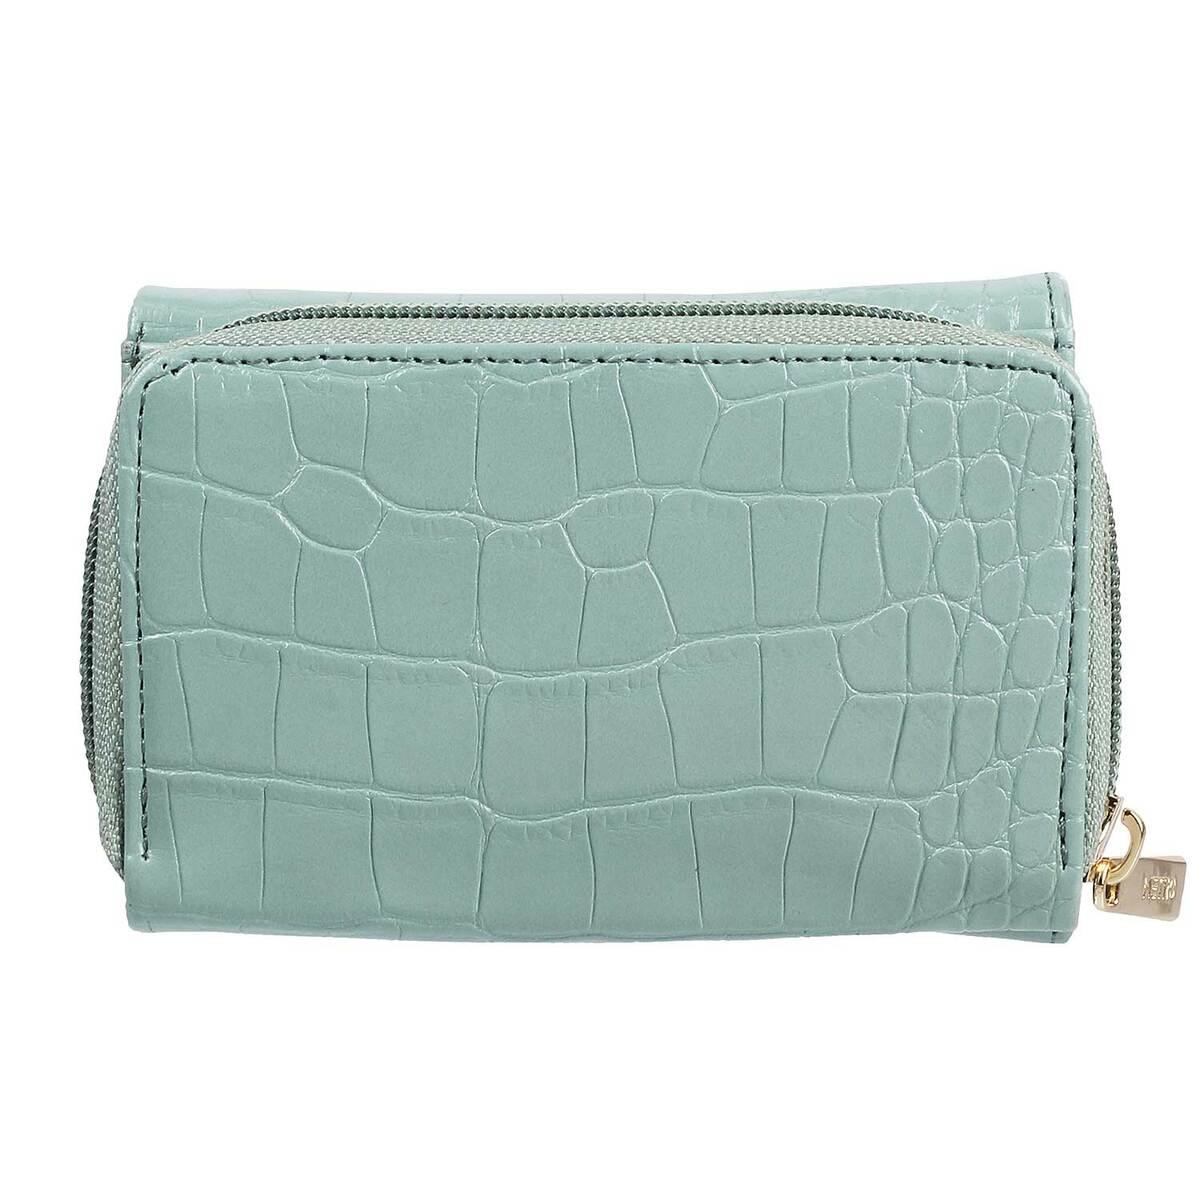 Buy Women Green Casual Handbag Online - 729762 | Allen Solly